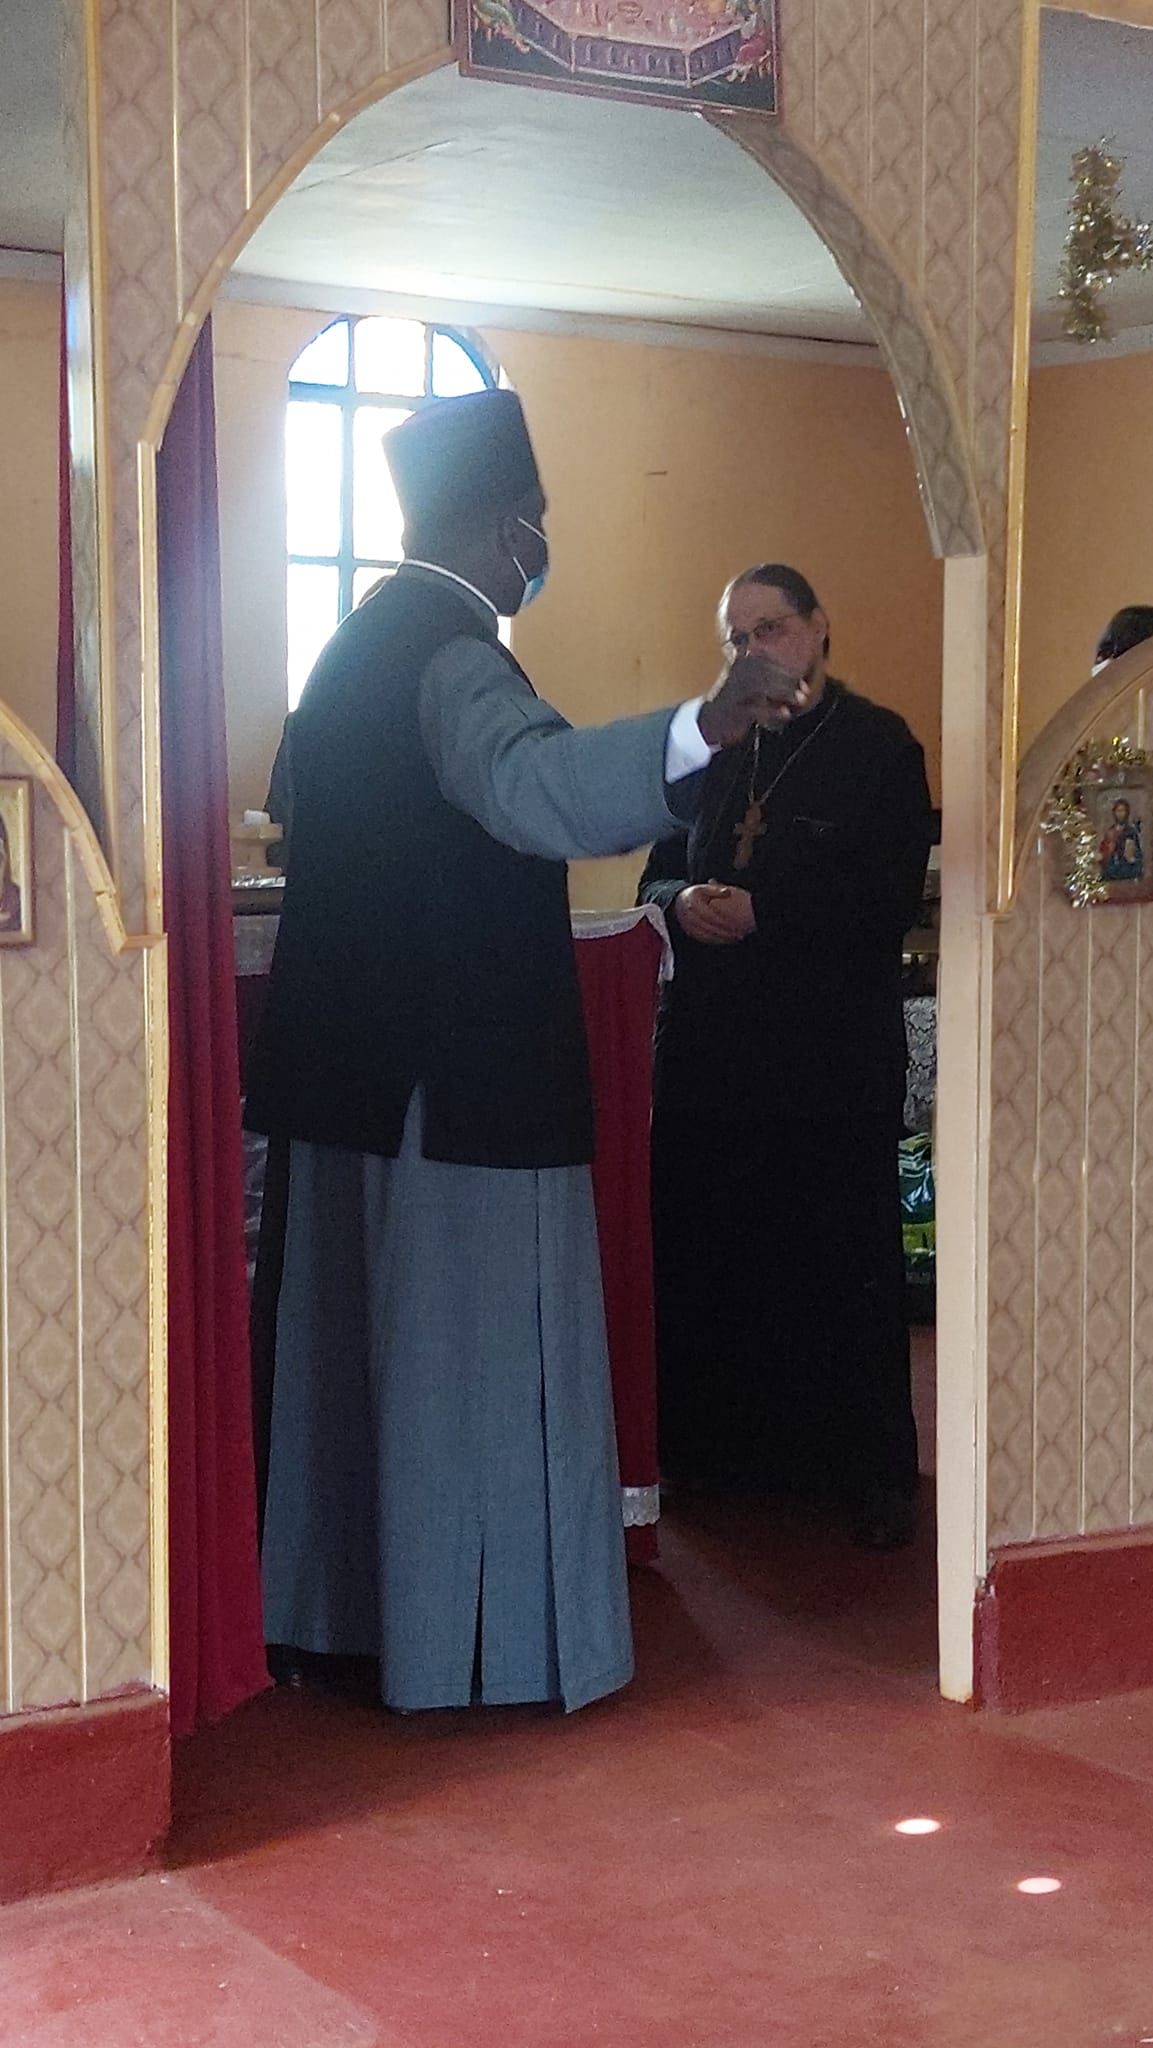 Епископ прогнал священника РПЦ из храма Александрийского Патриархата - фото 86701